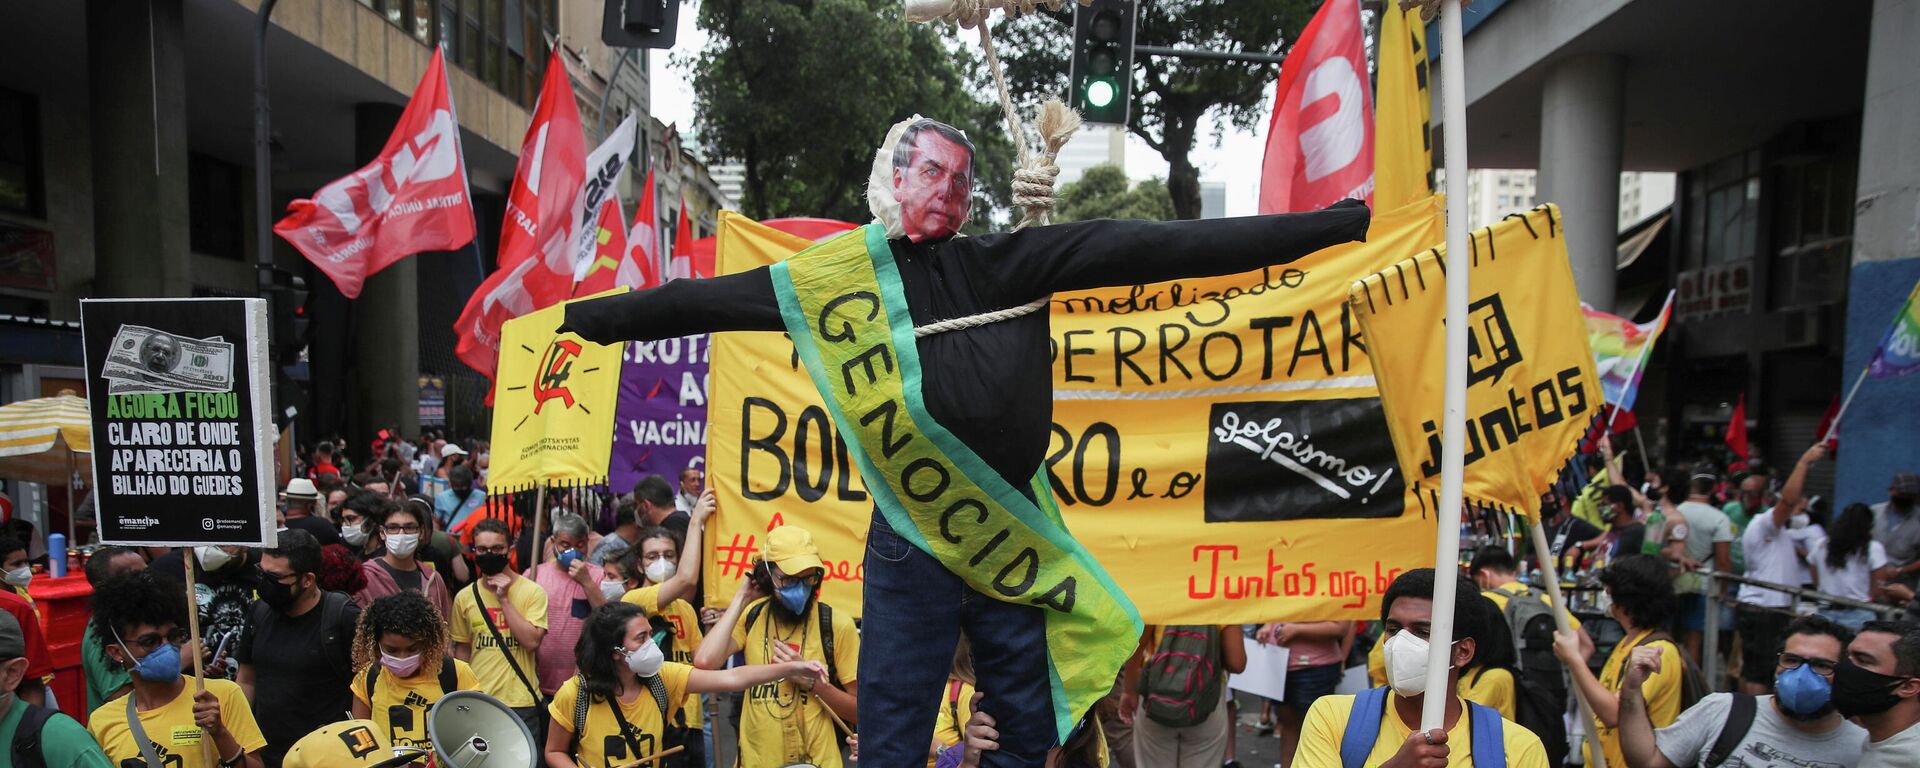 Protestas en Brasil contra Bolsonaro - Sputnik Mundo, 1920, 07.09.2021